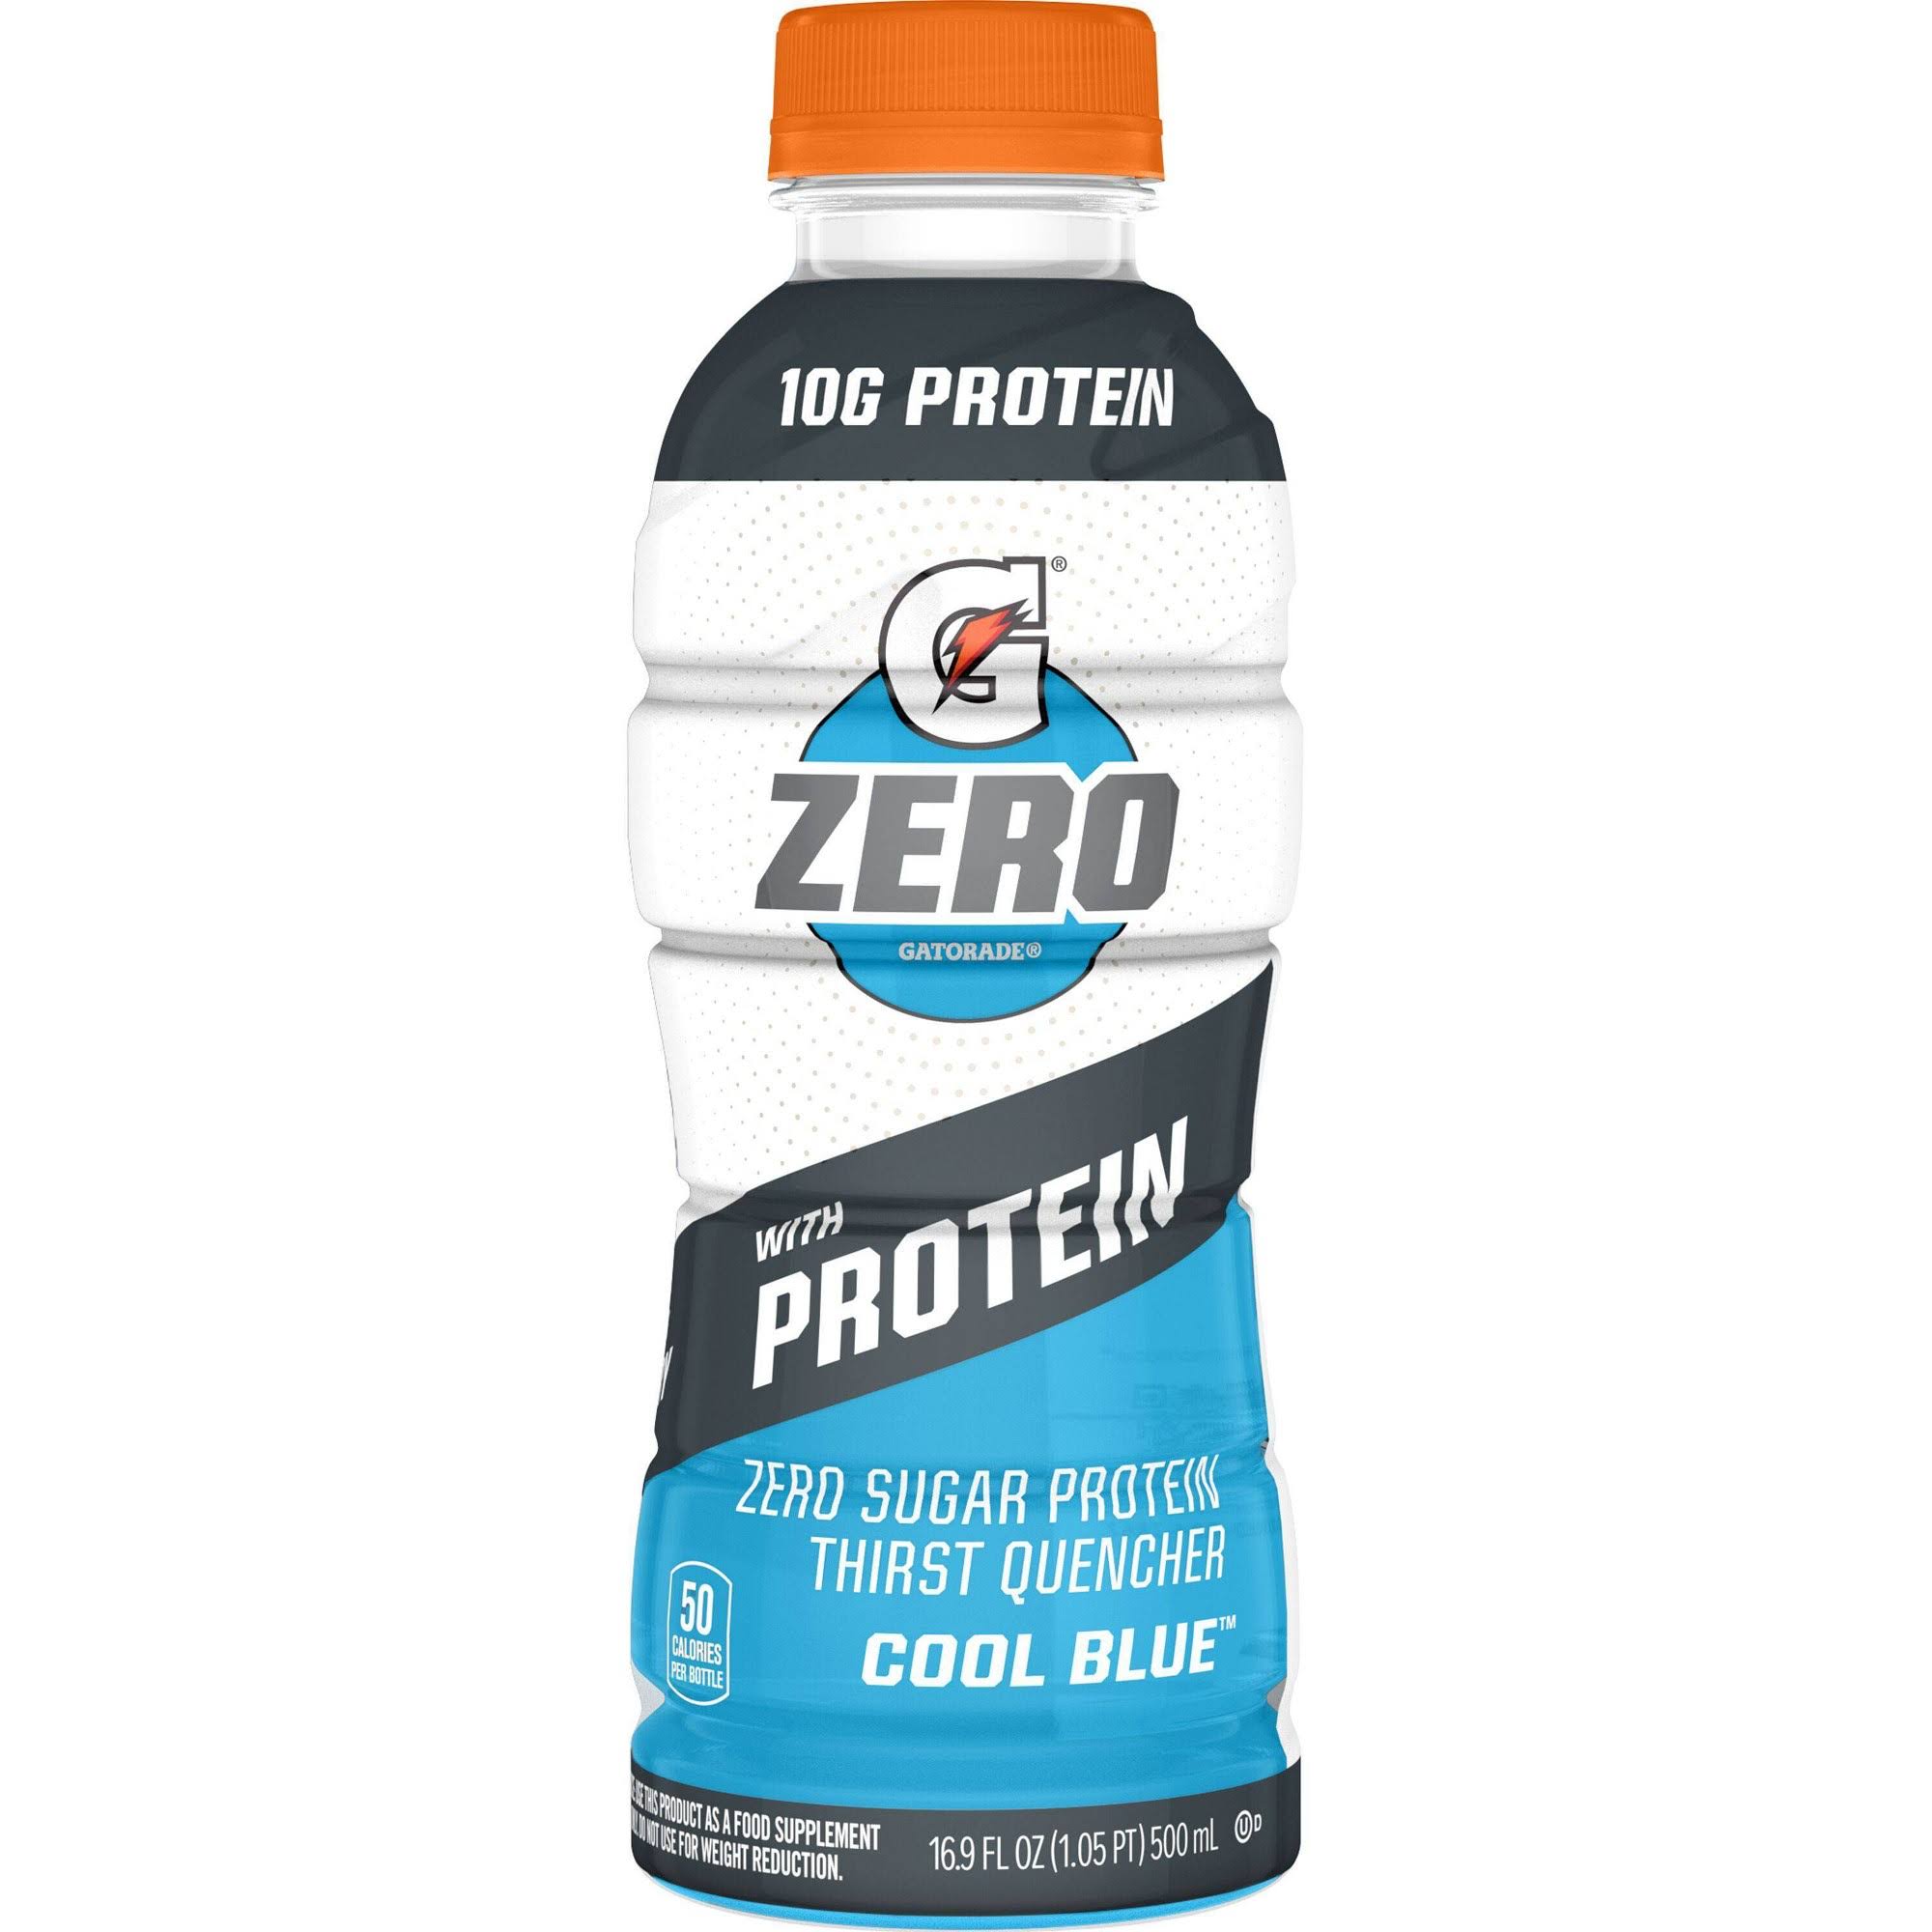 Gatorade Zero Thirst Quencher, Zero Sugar, Cool Blue, with Protein - 16.9 fl oz